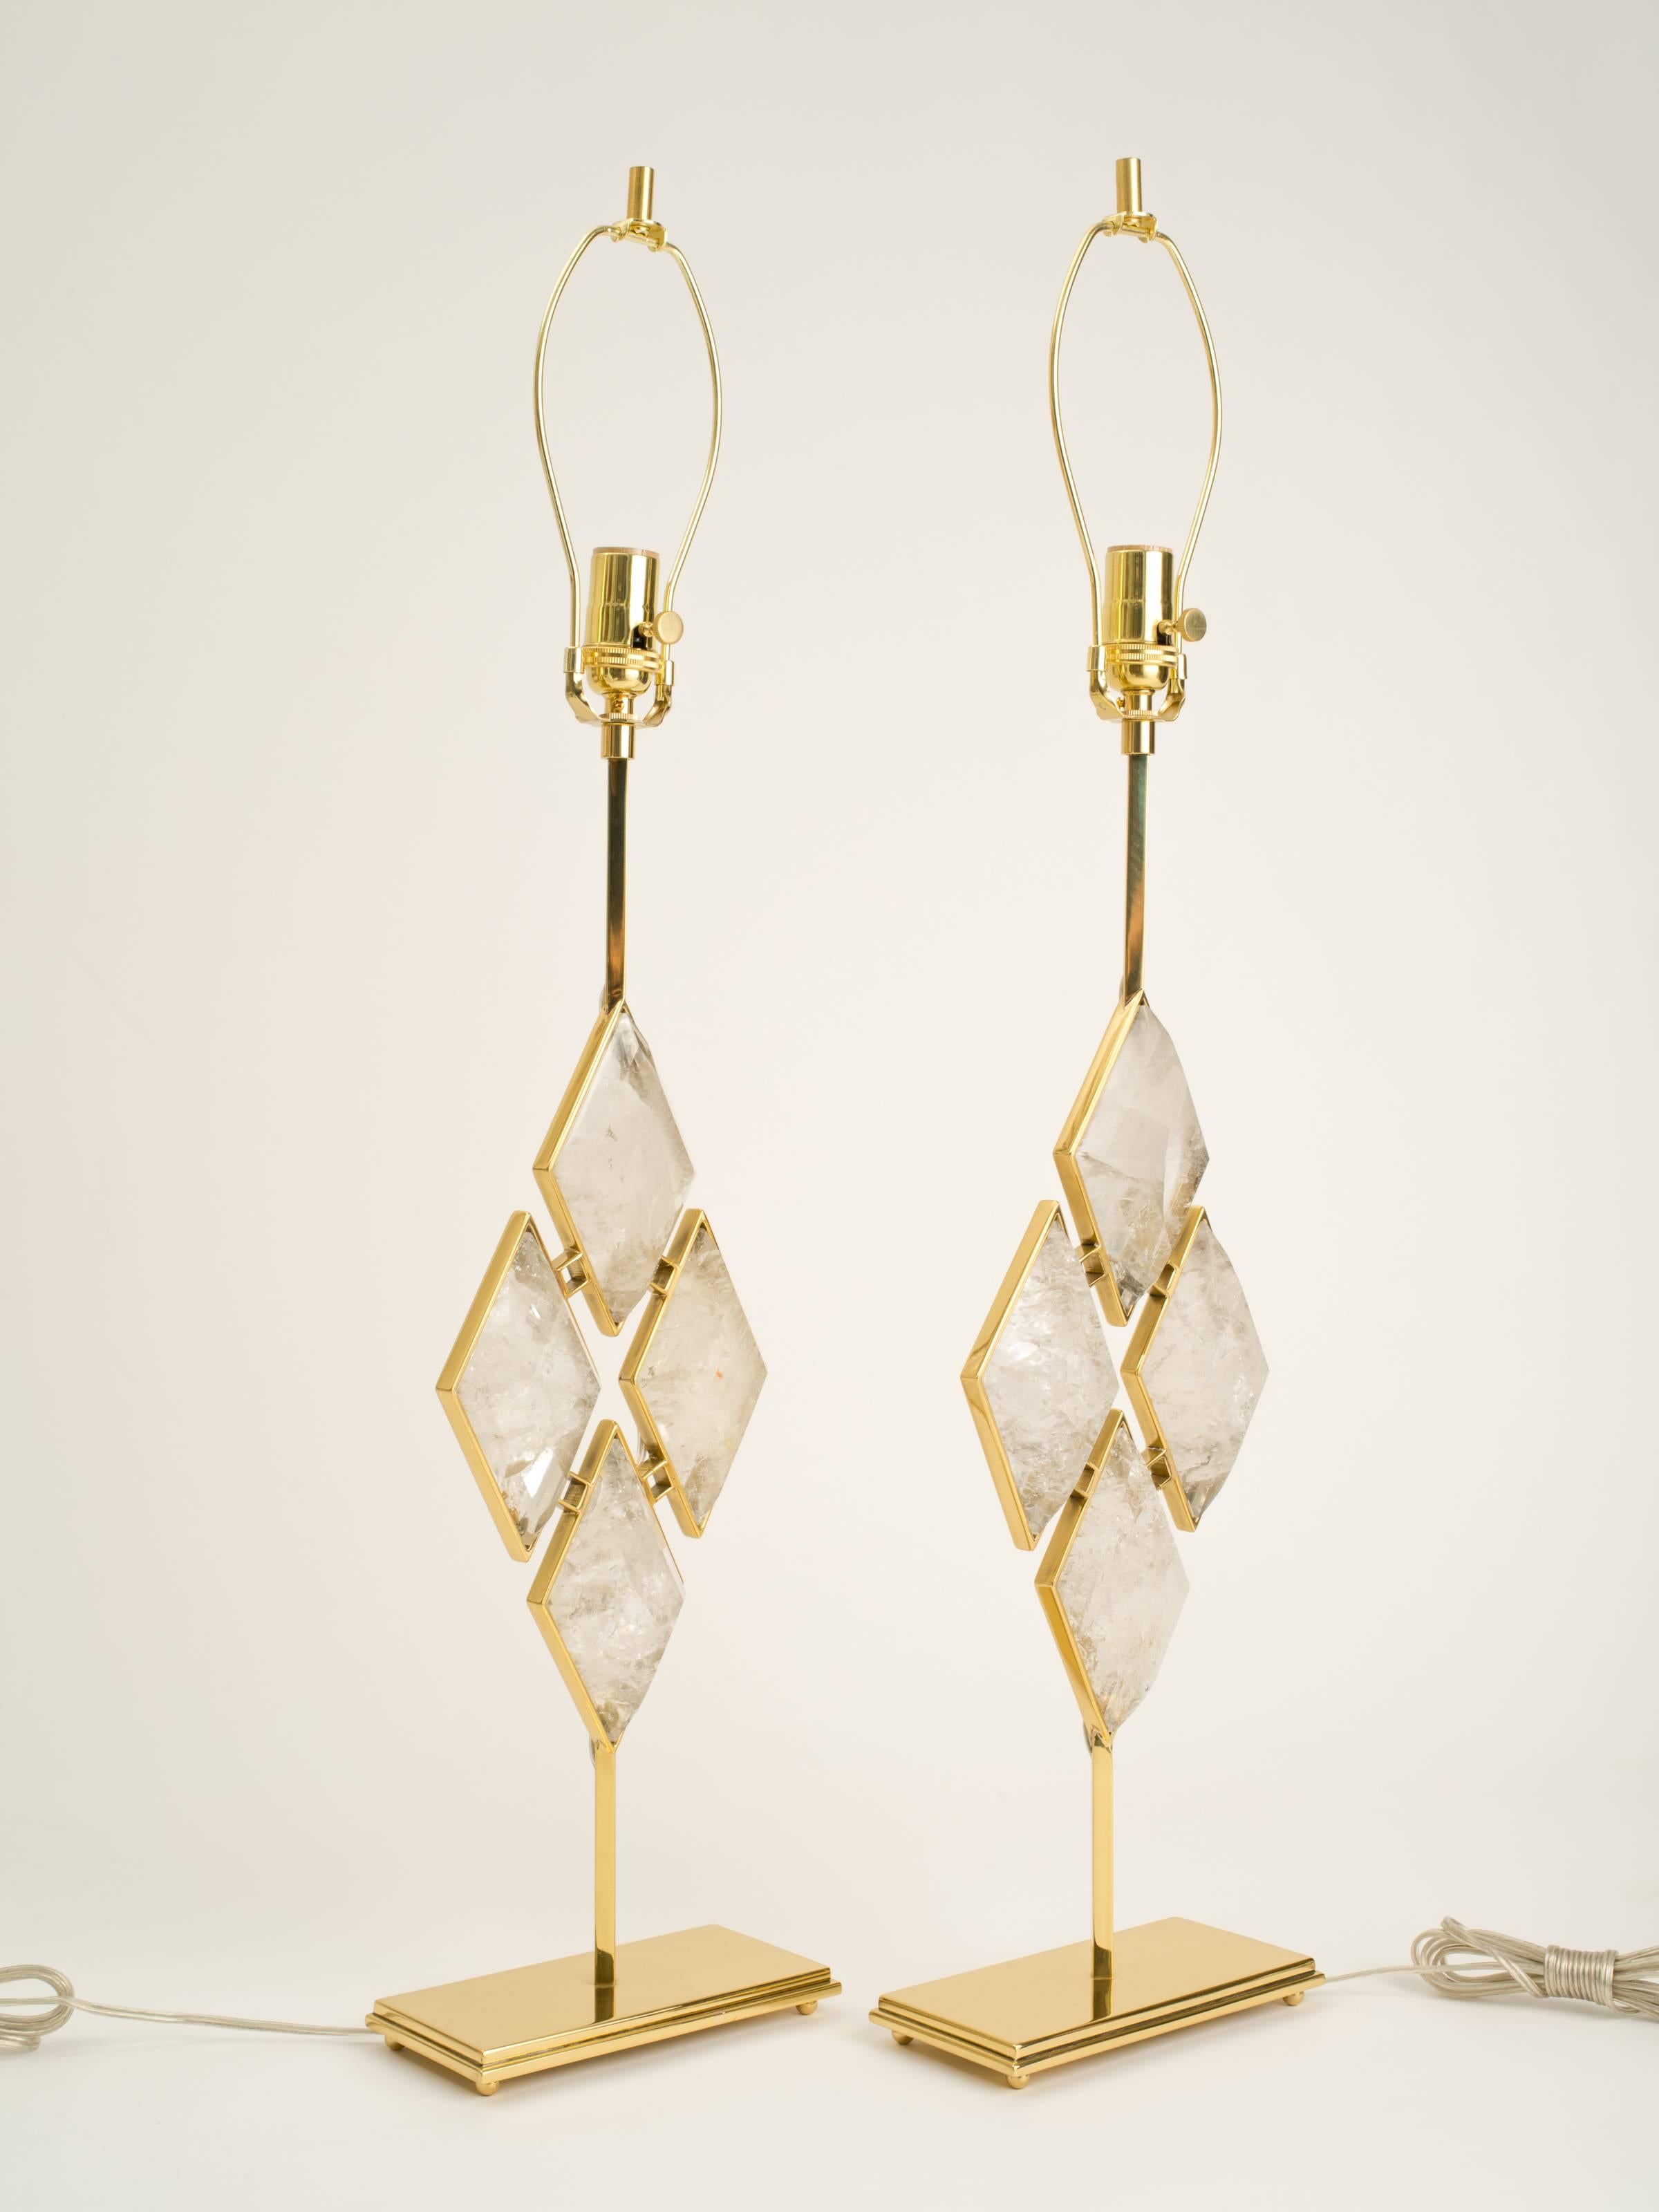 Lampes de table en cristal de roche et diamants, collection Eon 